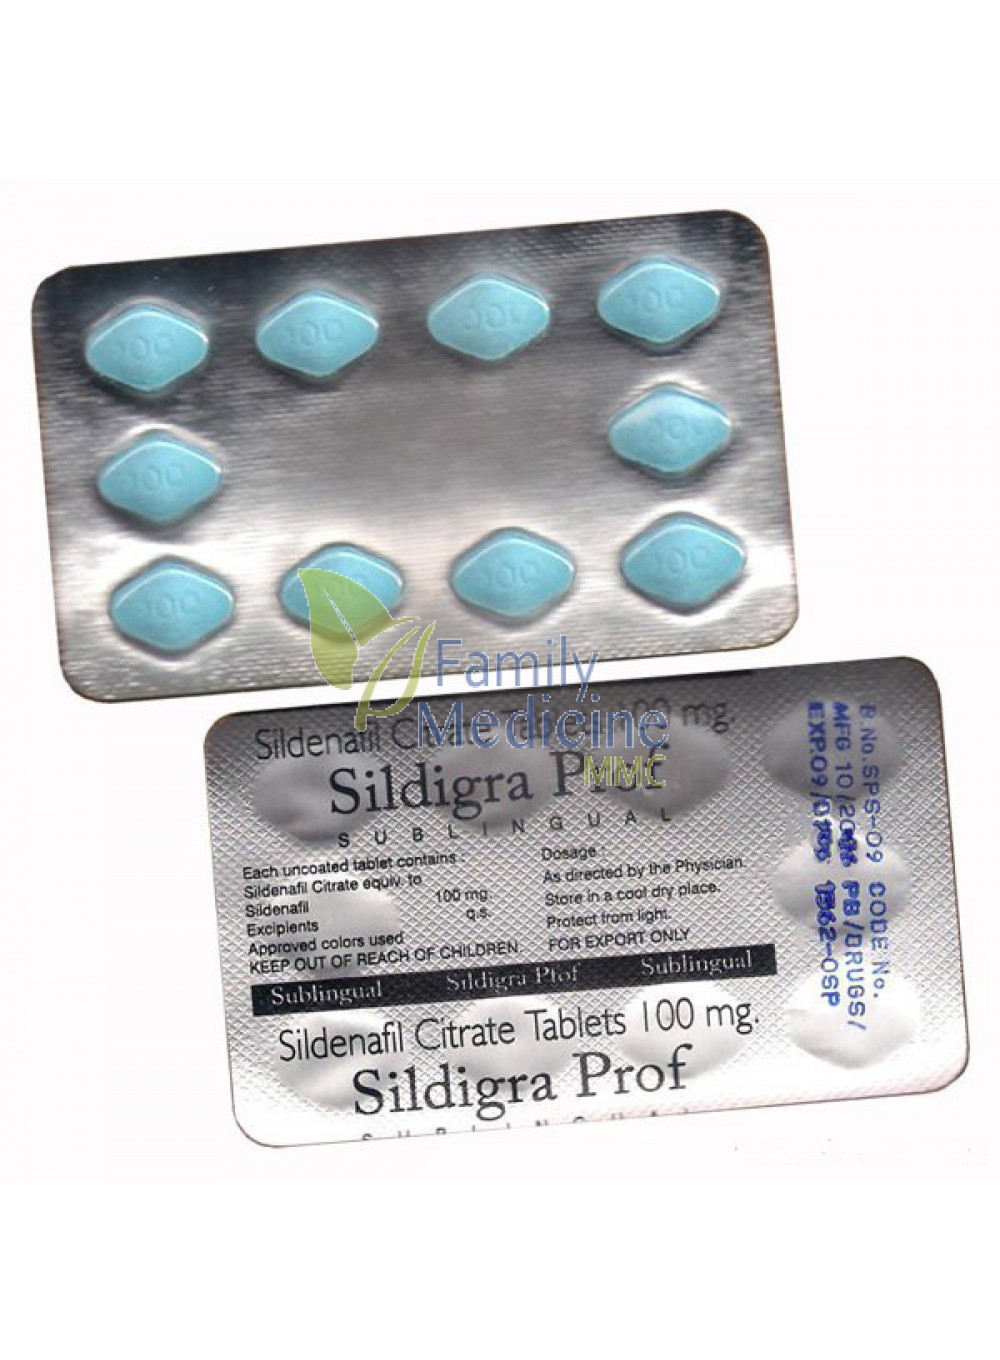 sildenafil citrate medicine in india